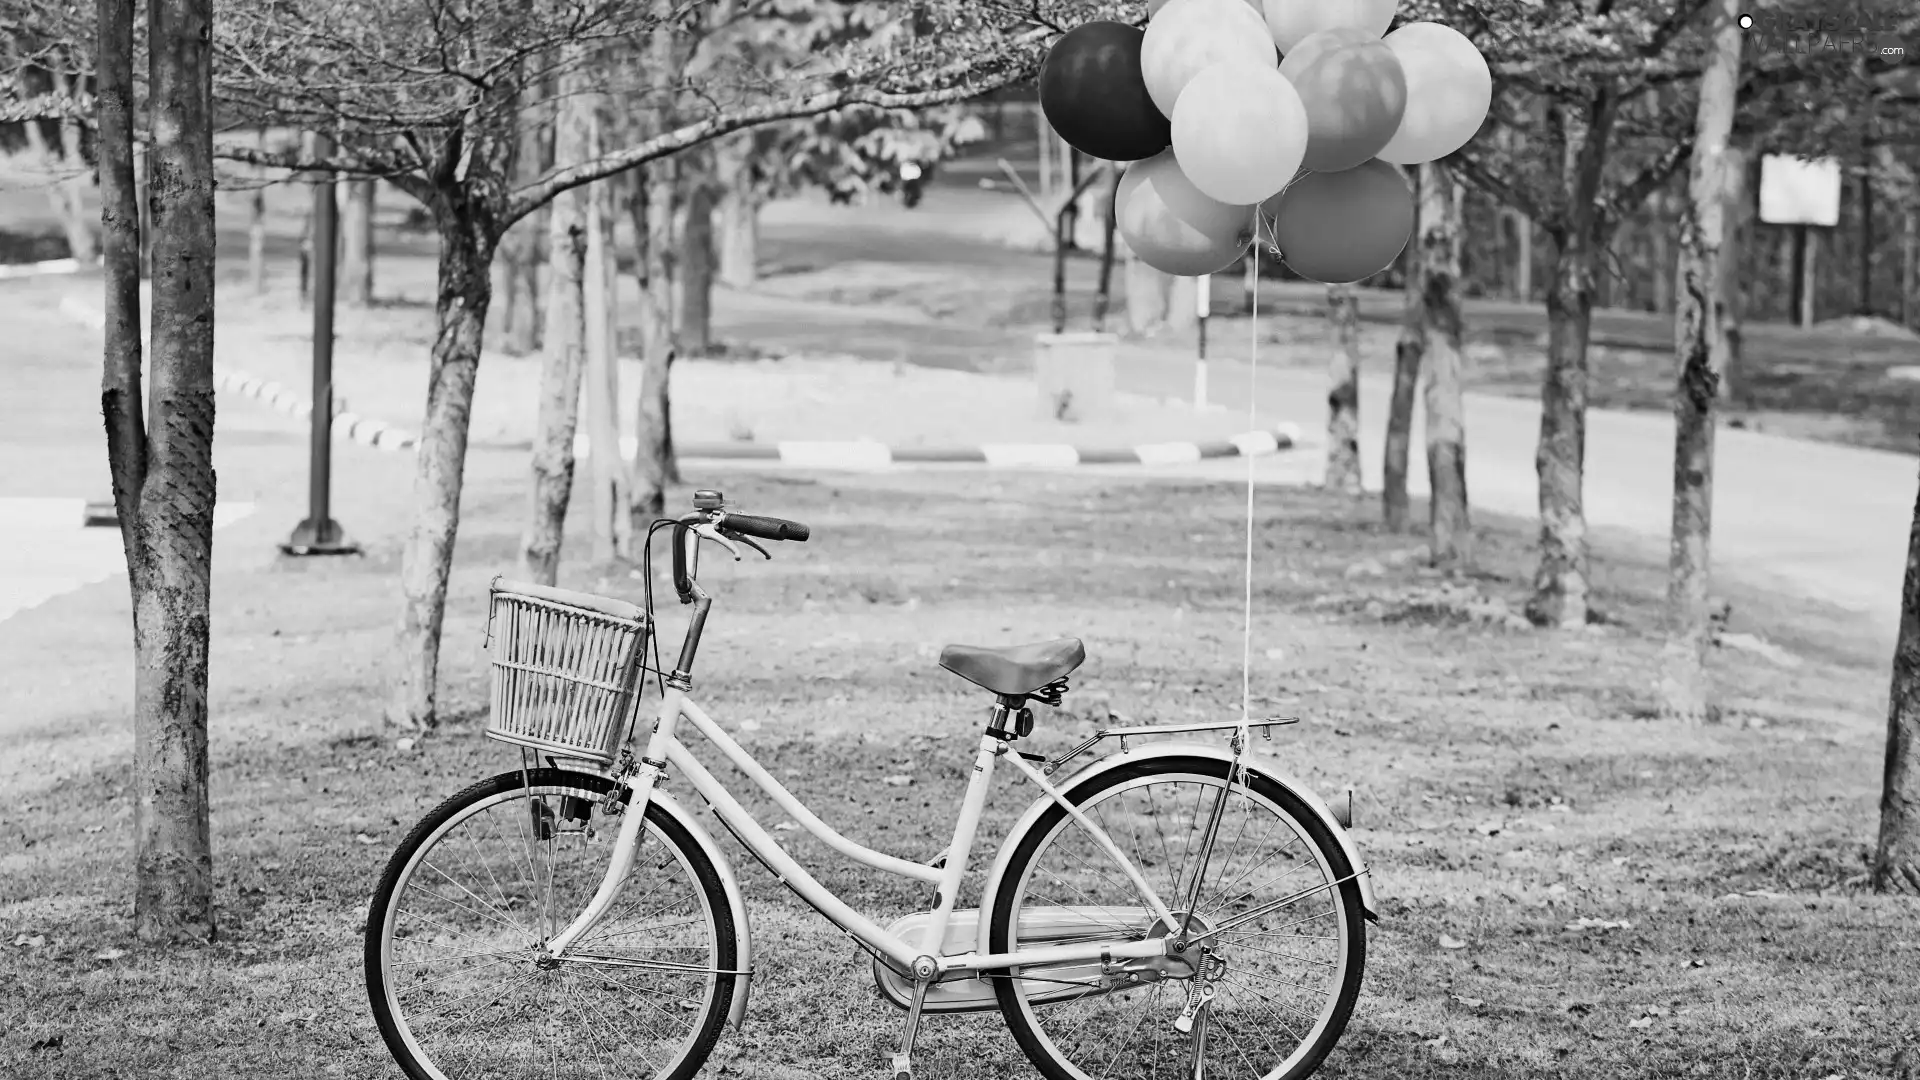 Balloons, Bike, Park